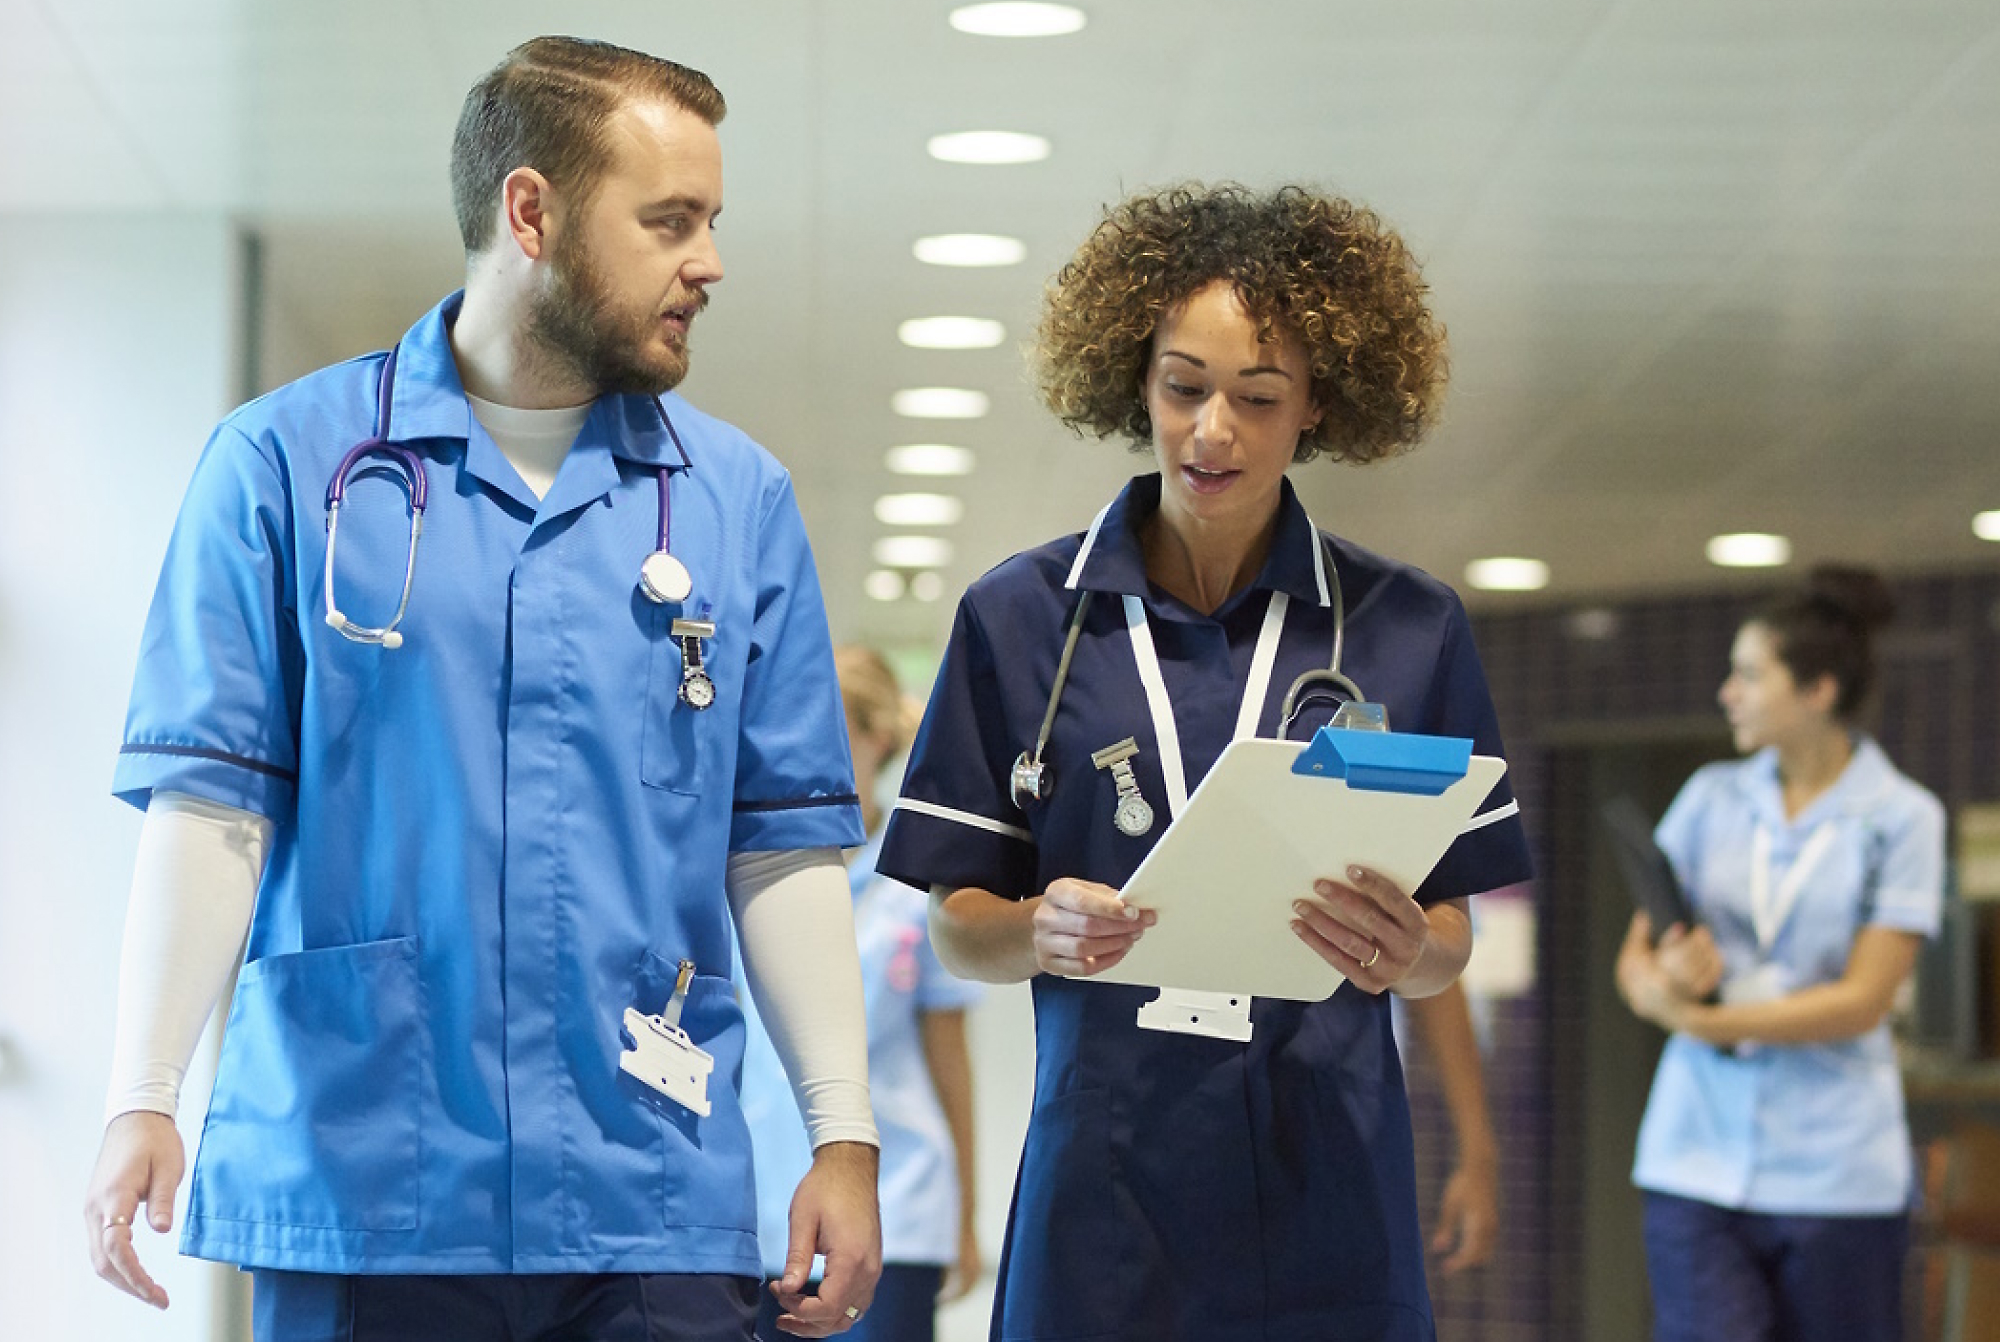 Dos profesionales sanitarios con uniformes azules hablando y caminando en un hospital, con uno sosteniendo un portapapeles. 